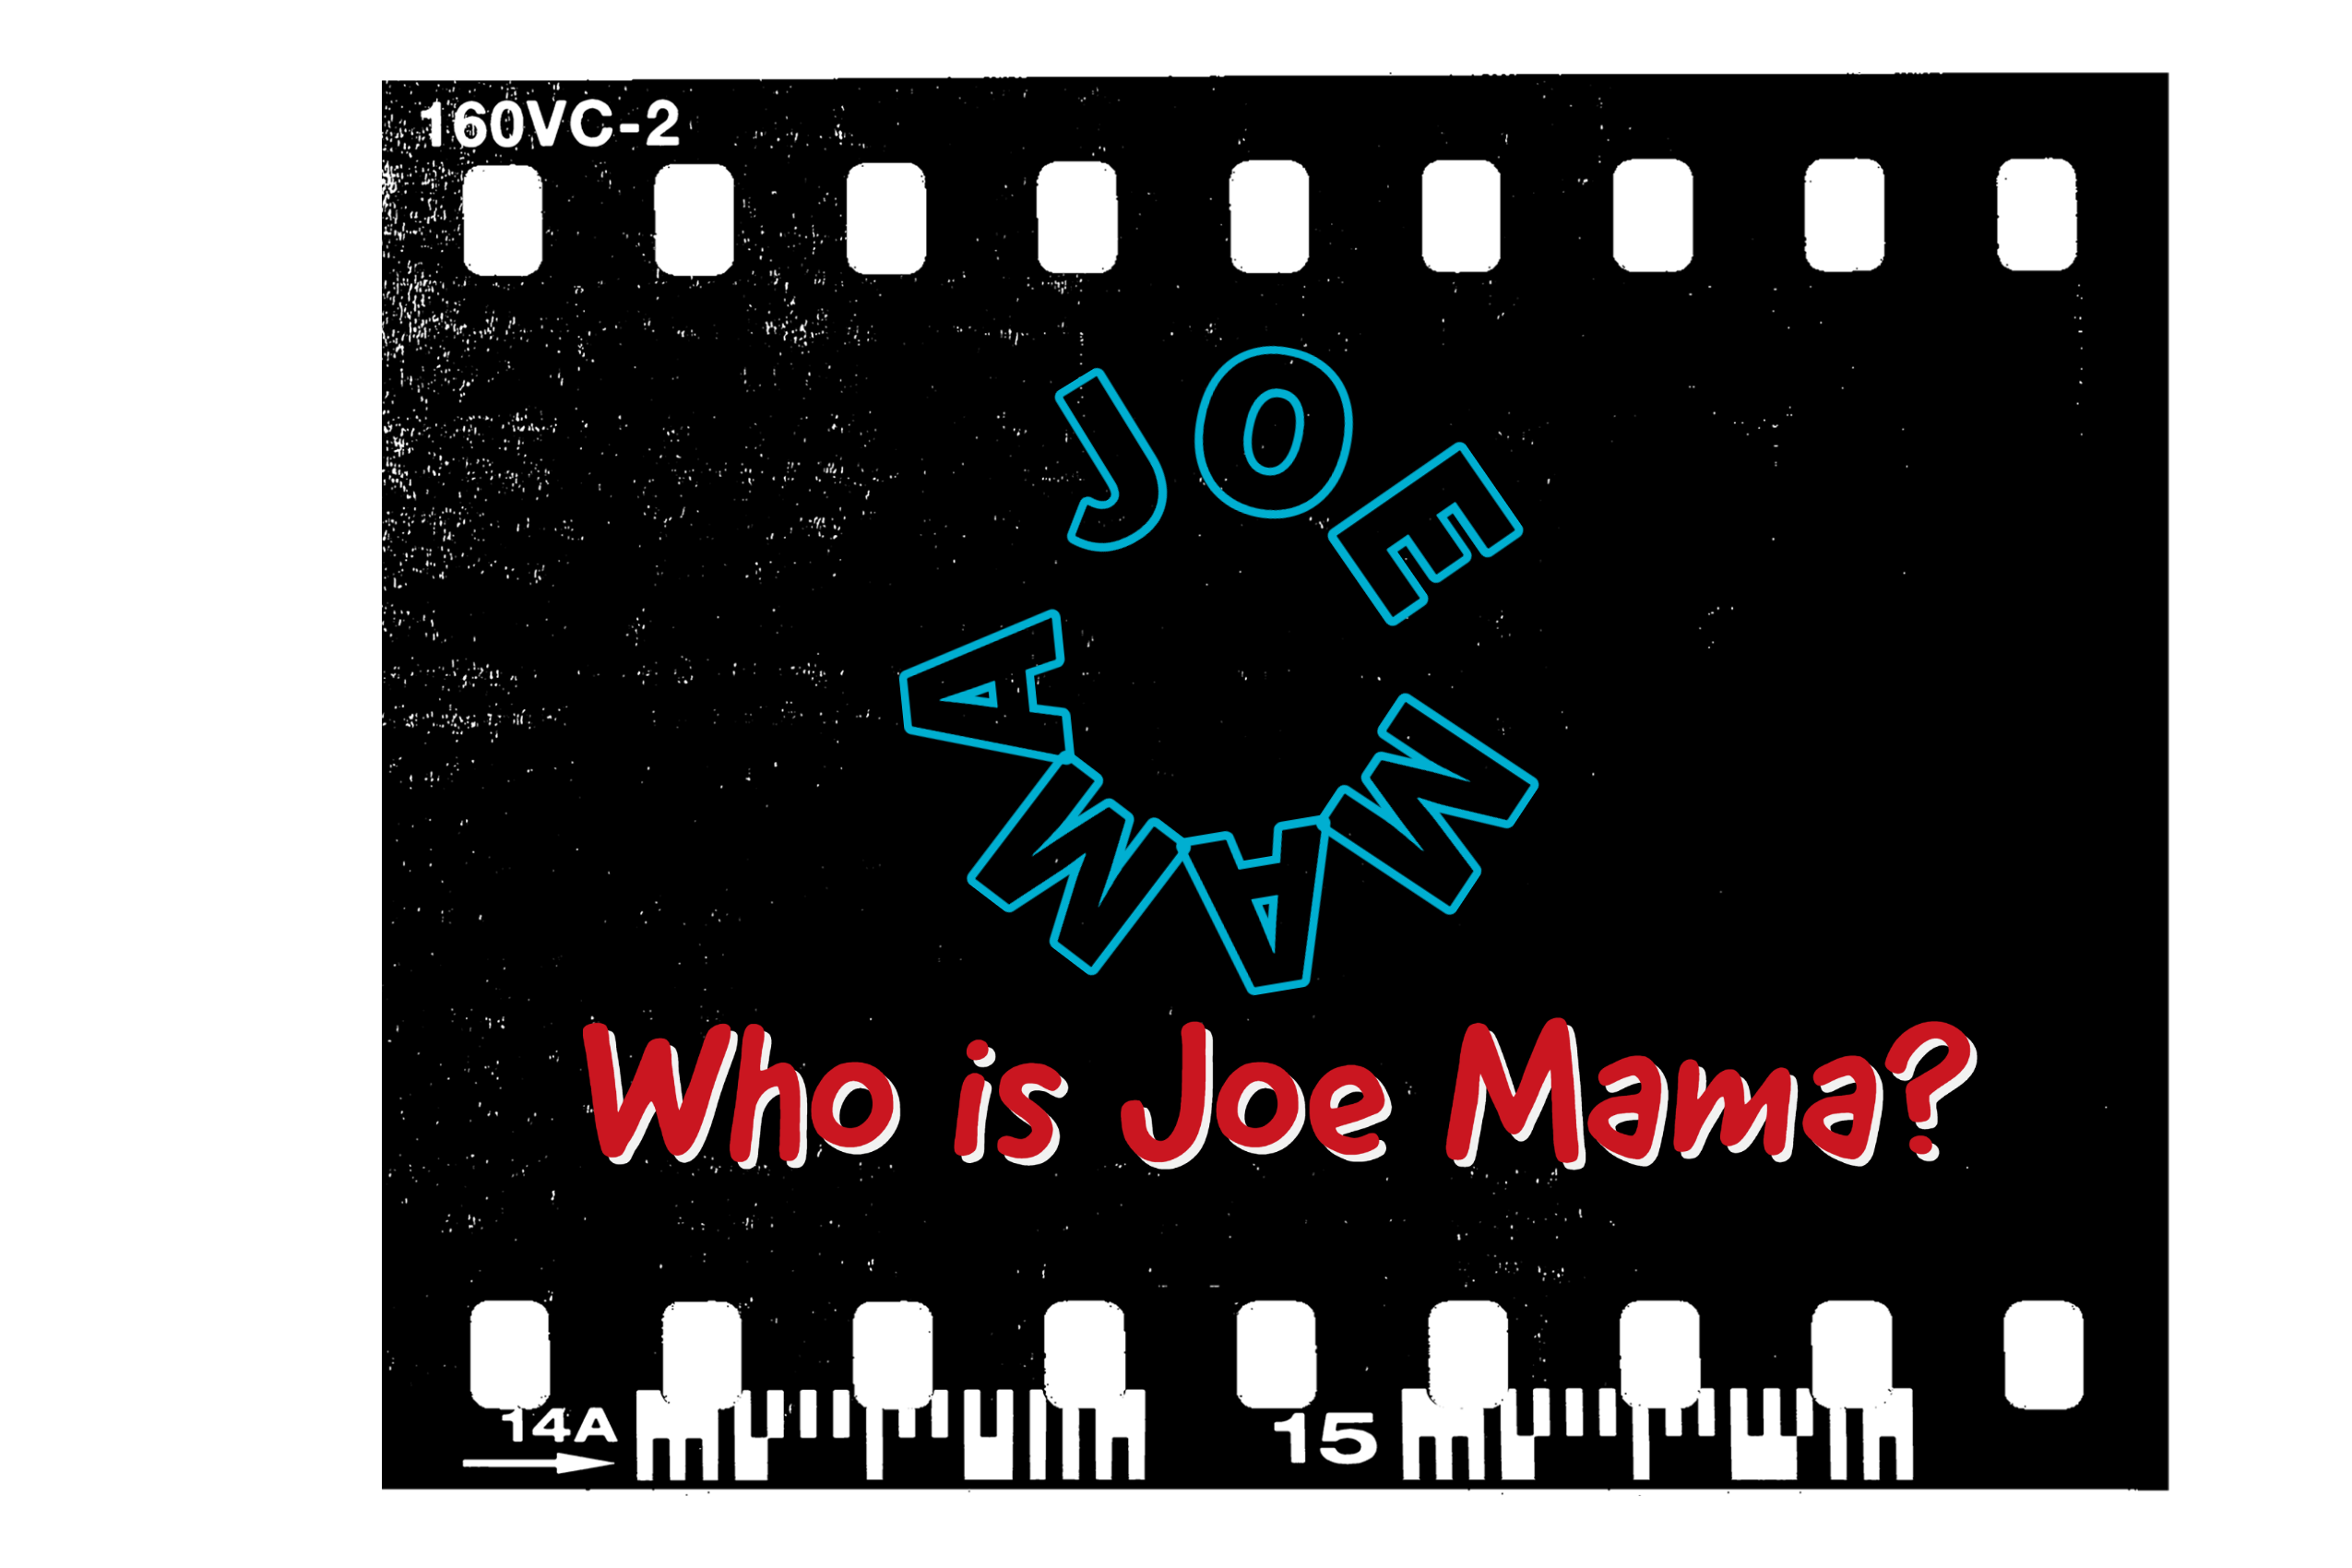 جو ماما